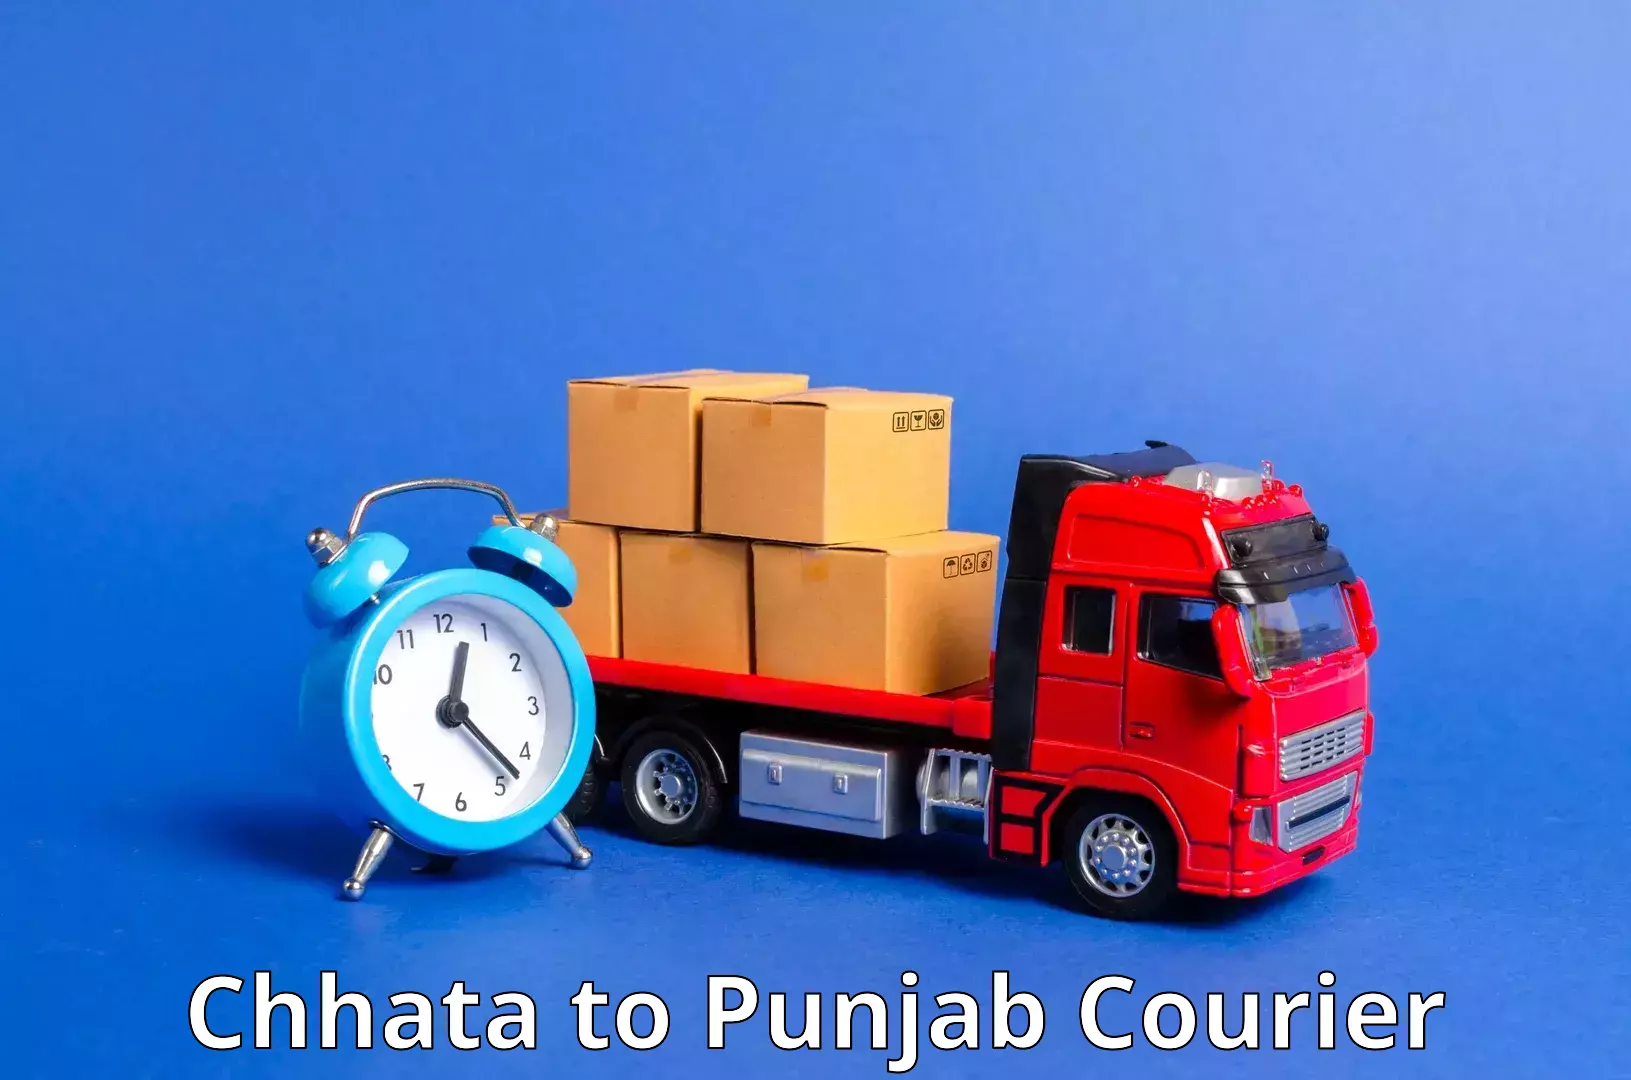 Express package handling Chhata to Punjab